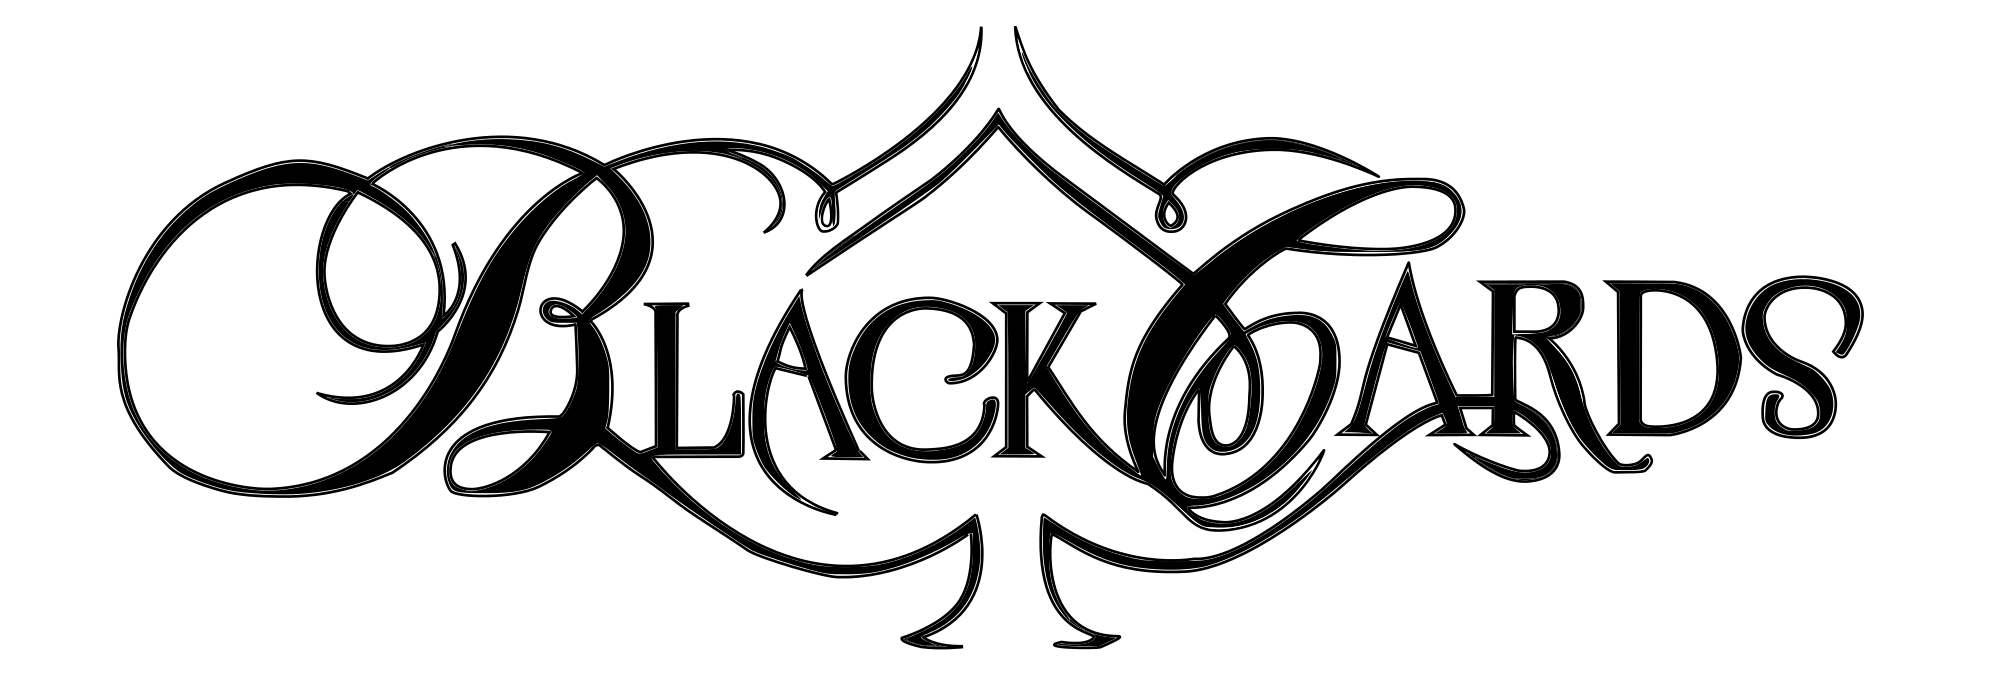 Black Cards Logo - Black Cards (Black).svg